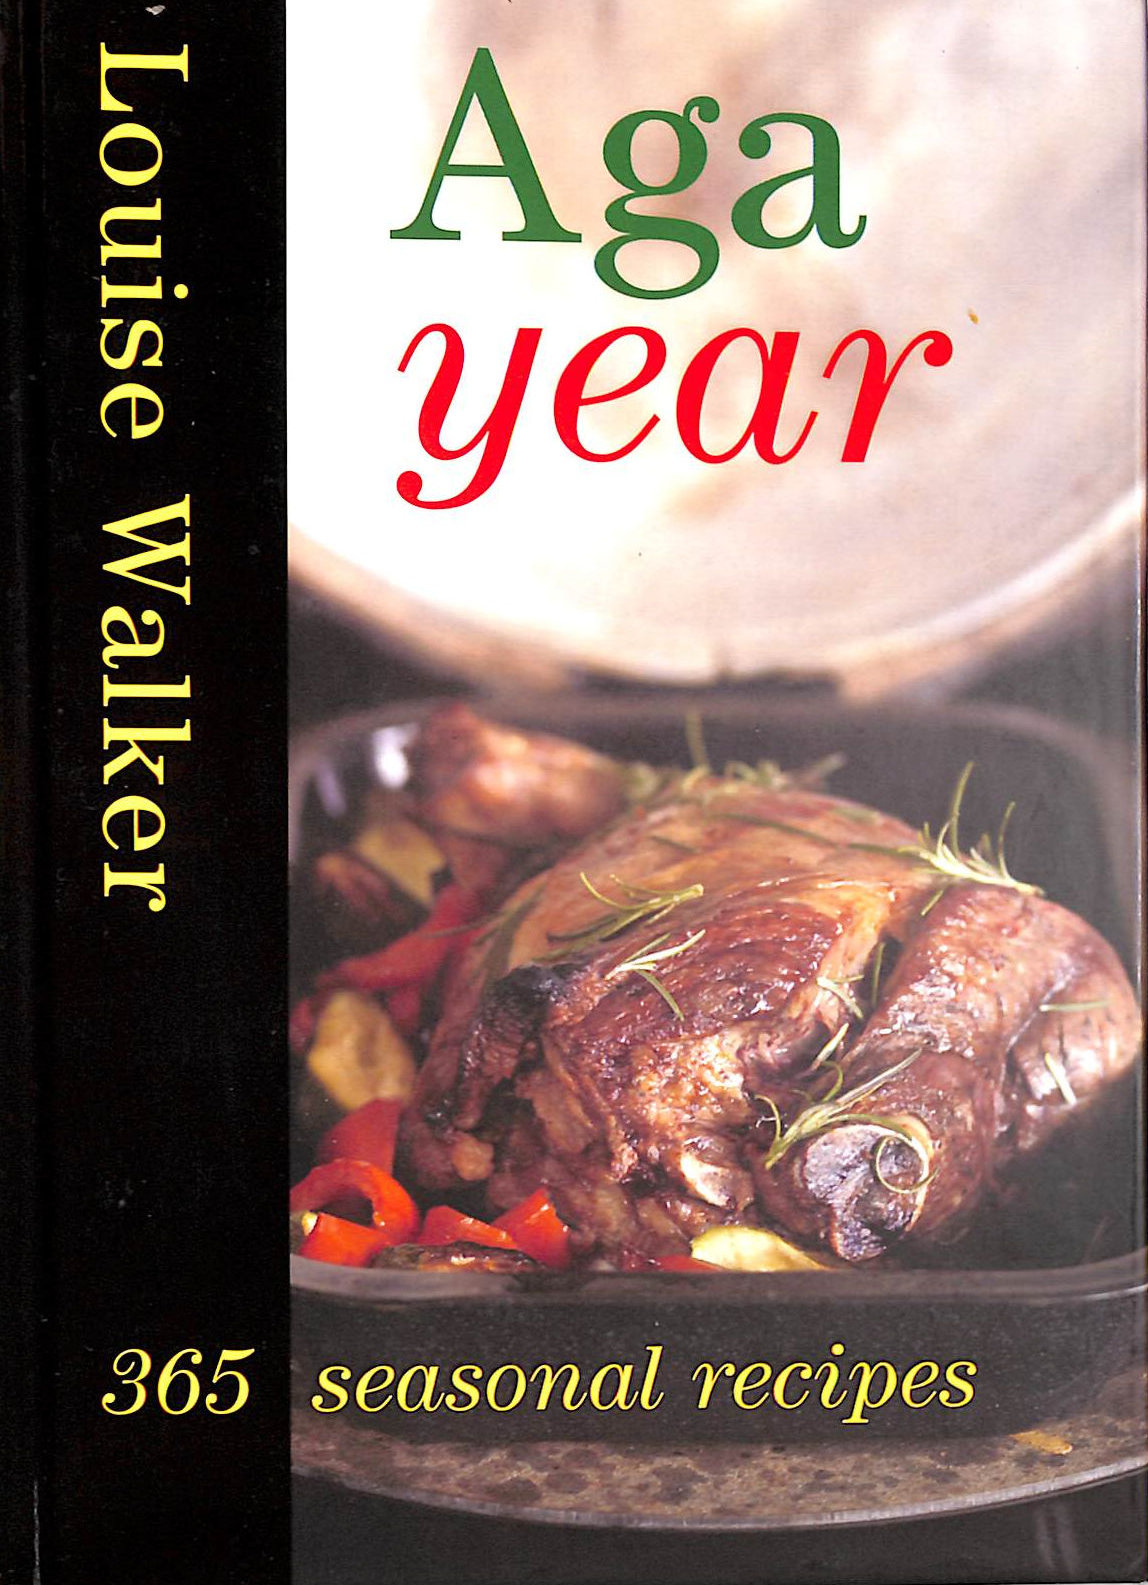 WALKER, LOUISE - Aga Year: 365 Seasonal Recipes